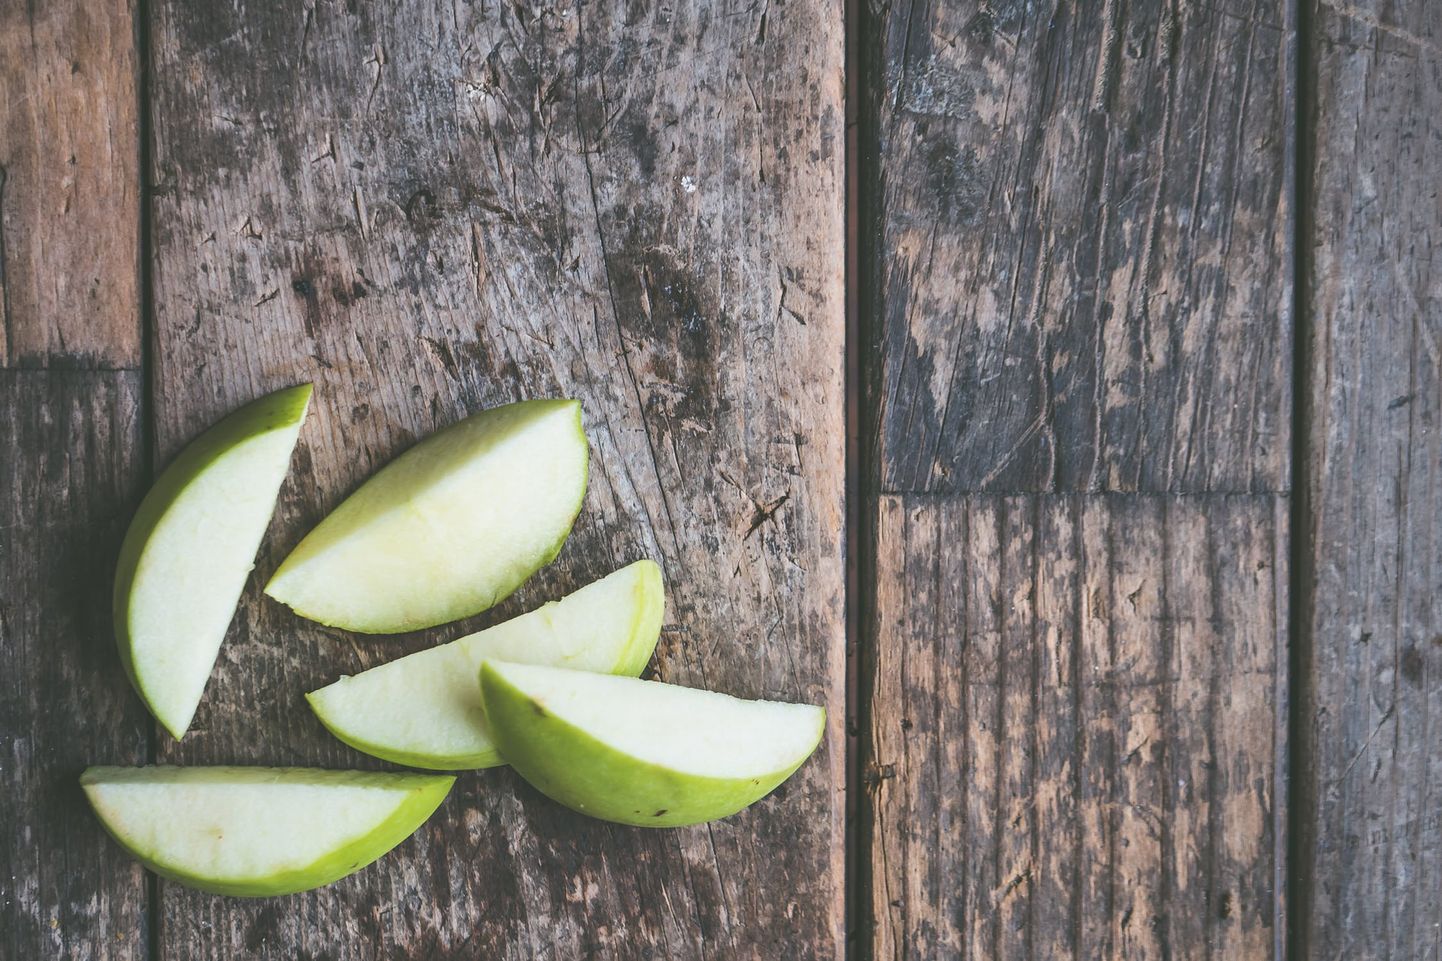 Kas teadsid, kuidas õunasektoreid kauem värskena hoida?